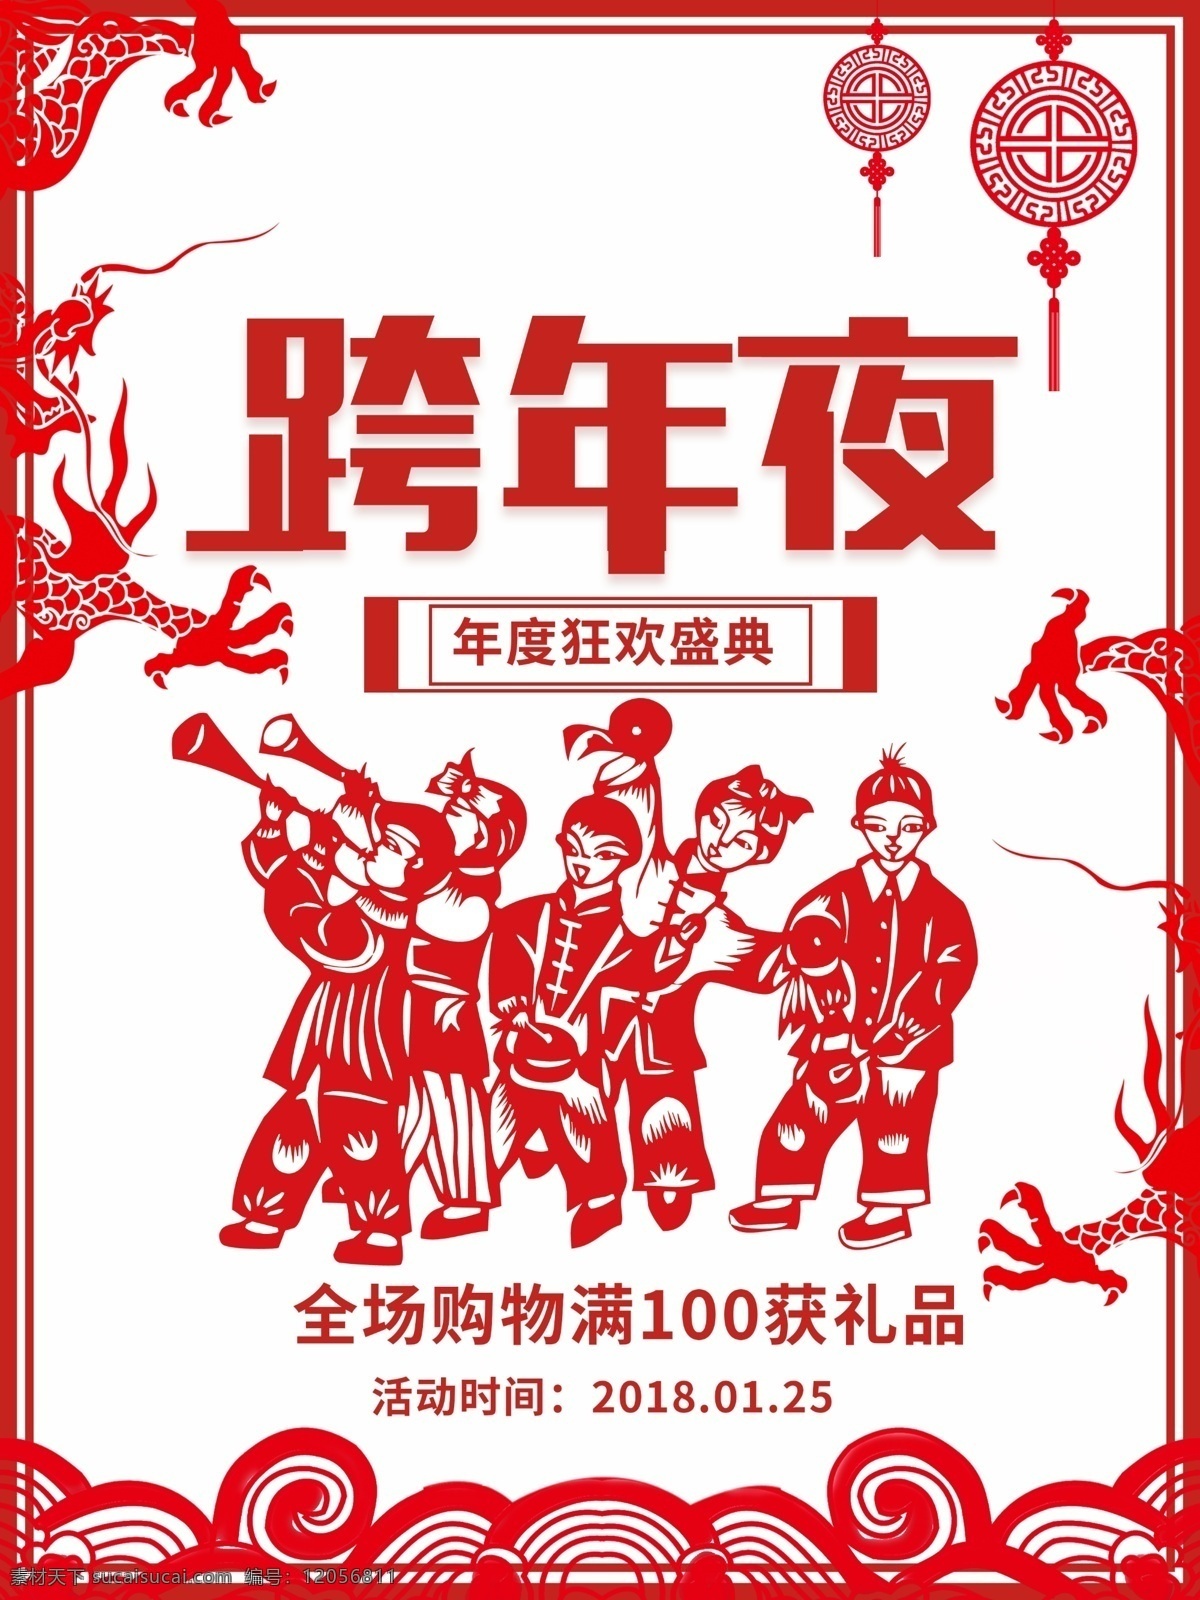 跨 年夜 节日 促销 促销宣传海报 光点 海报 跨年夜 祥云 宣传 中国门楼